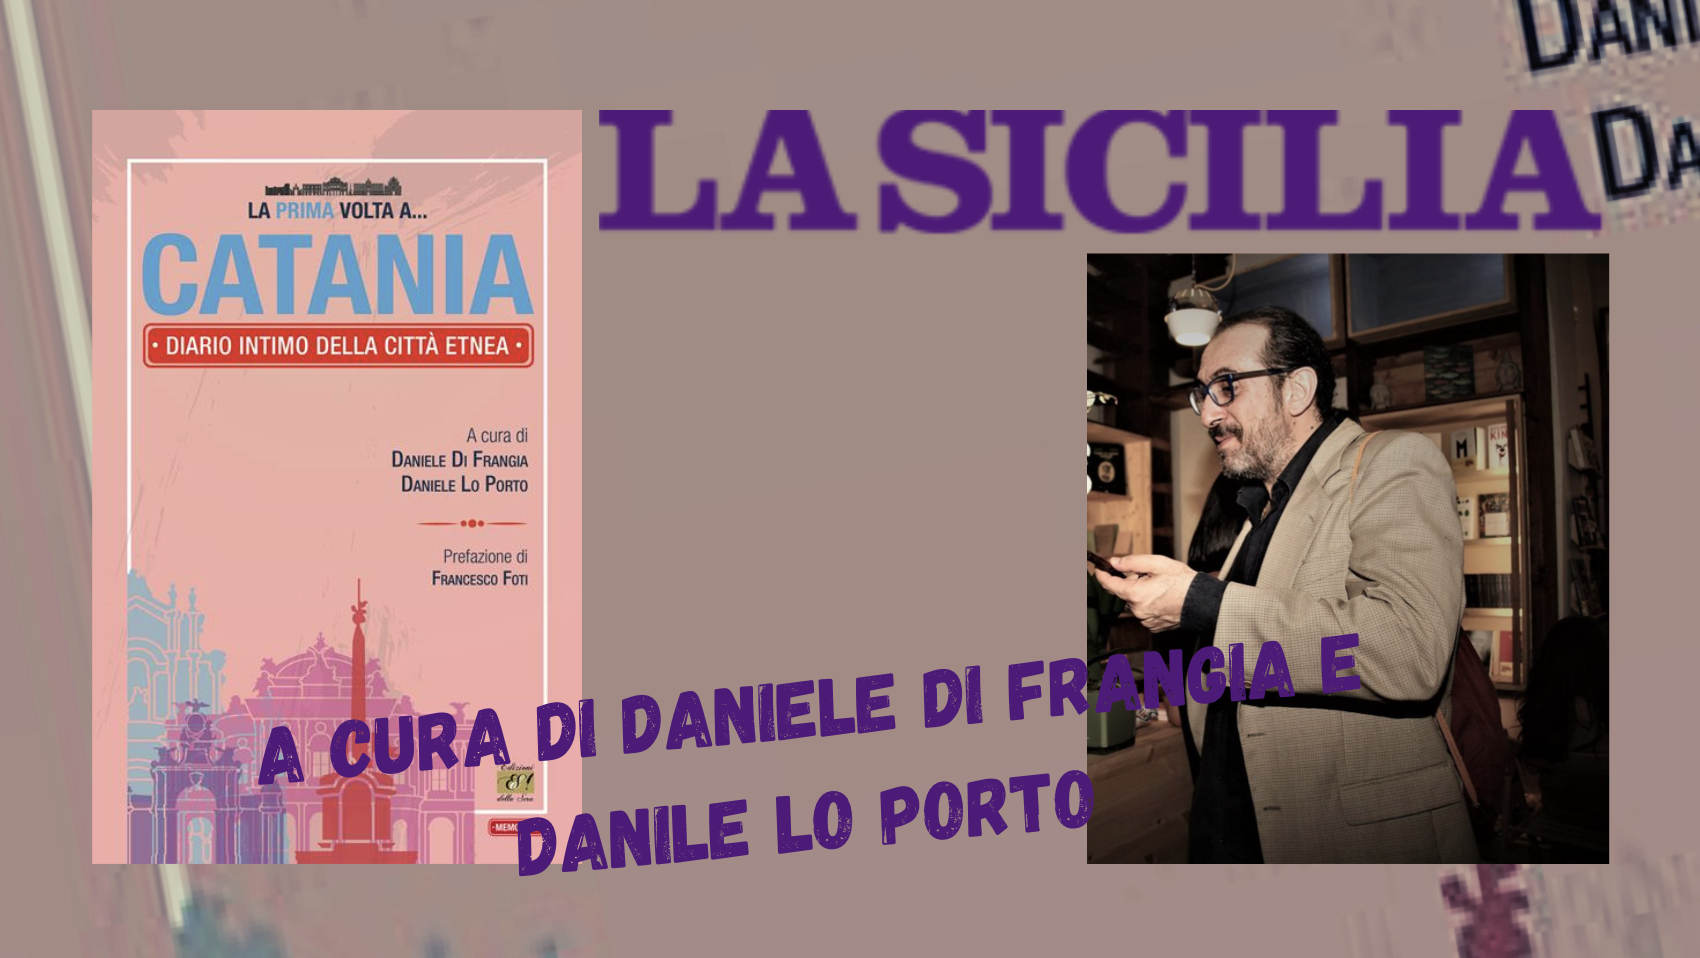 SMF su La Sicilia – “La prima volta a… Catania” di alcuni etnei Doc – Antologia curata da Daniele Di Frangia e Daniele Lo Porto